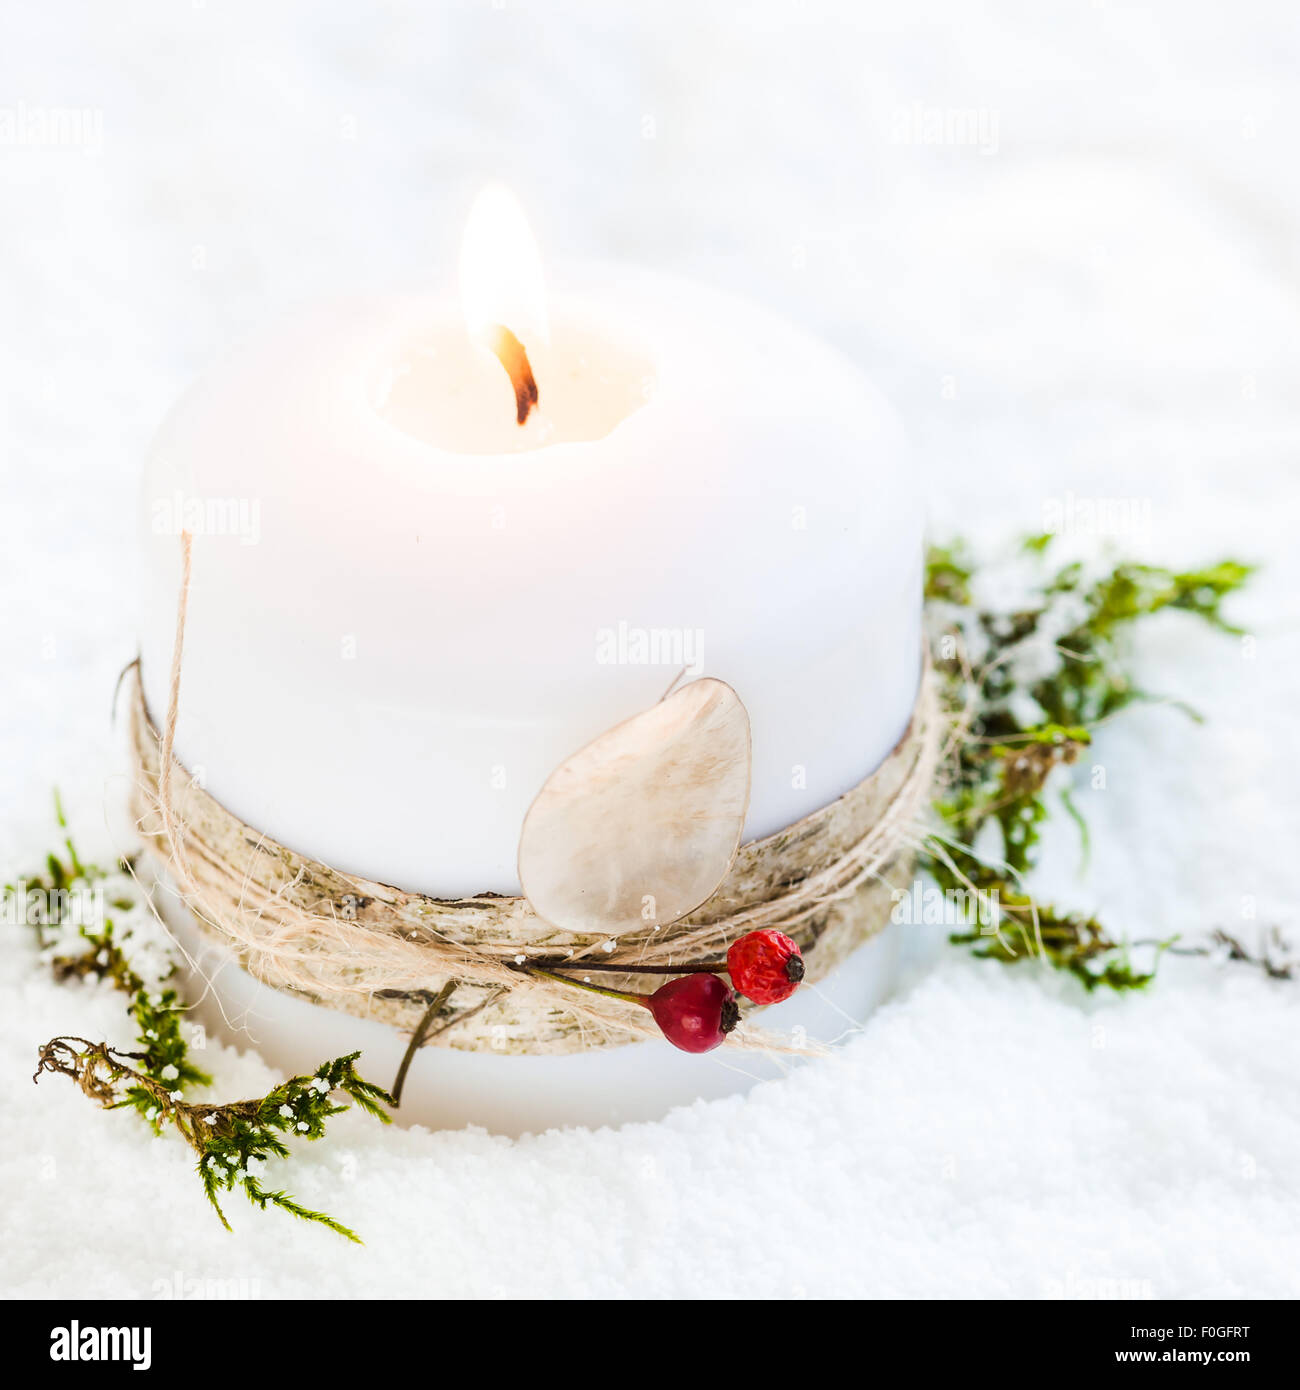 Accesa una candela bianca nella neve, decorata con corteccia di betulla, spago di bacche rosse e onestà seedpod Foto Stock